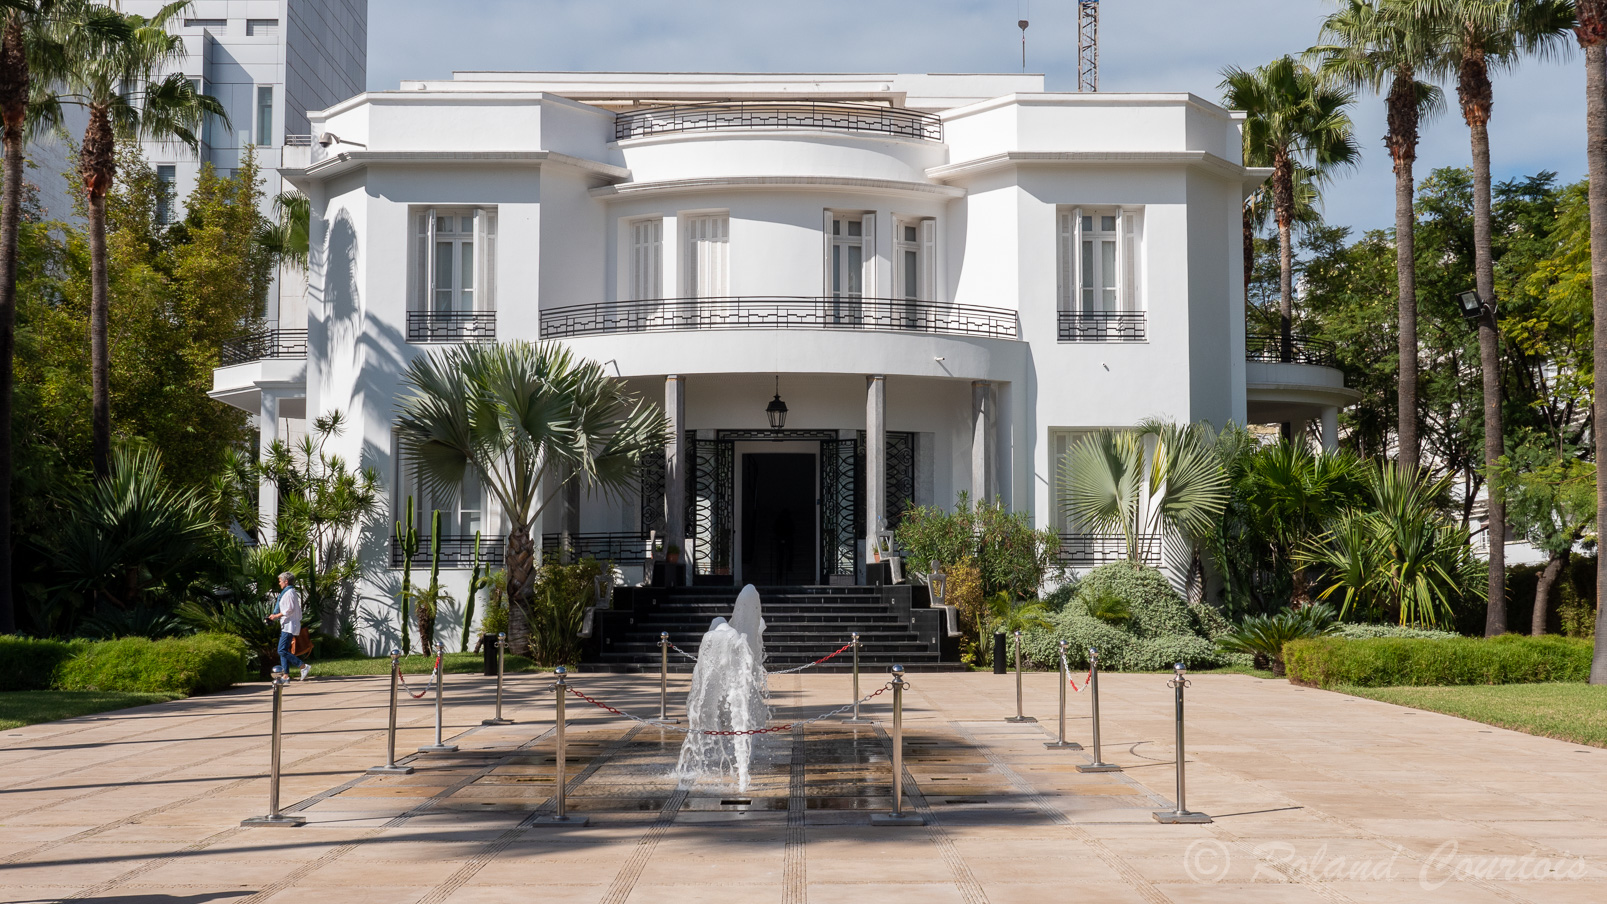 Villa des Arts,dans un bâtiment Art déco, cette galerie des années 1930 organise des expositions d’artistes contemporains marocains et internationaux.